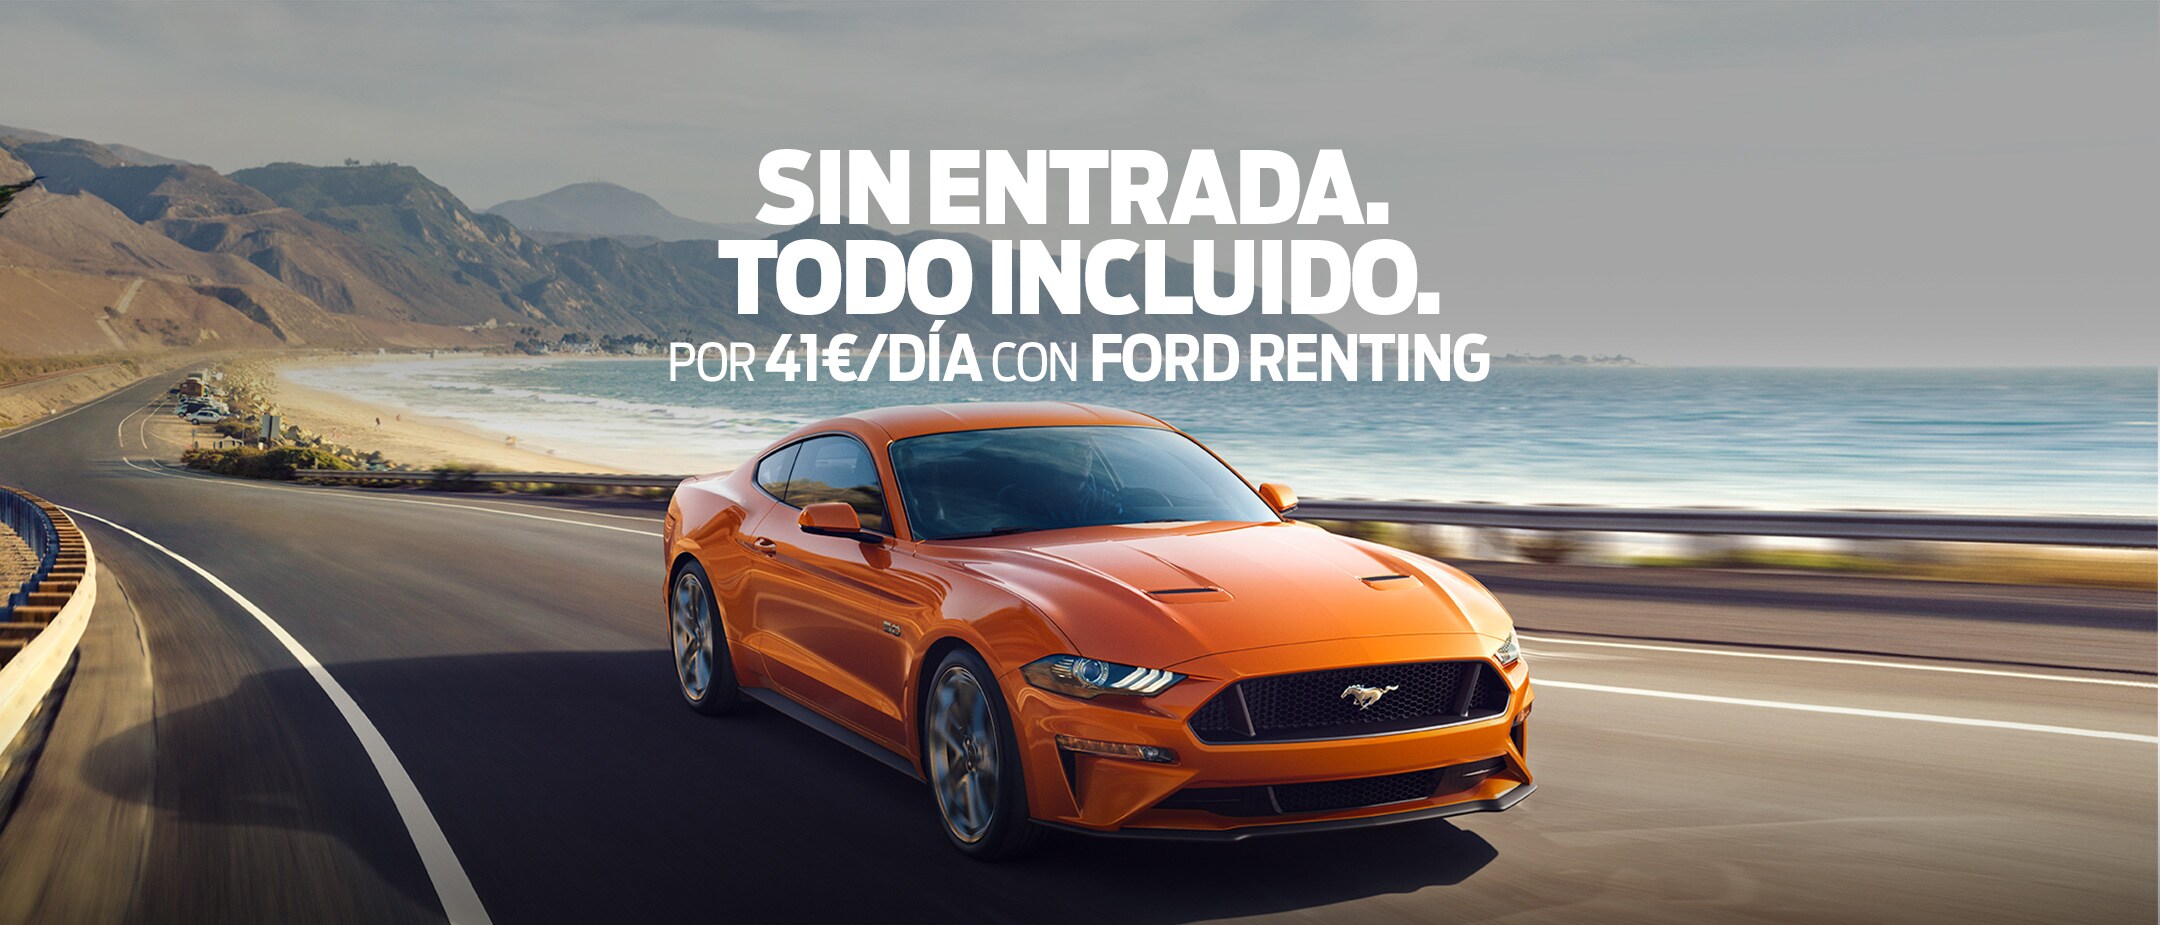 Orange Ford Mustang renting